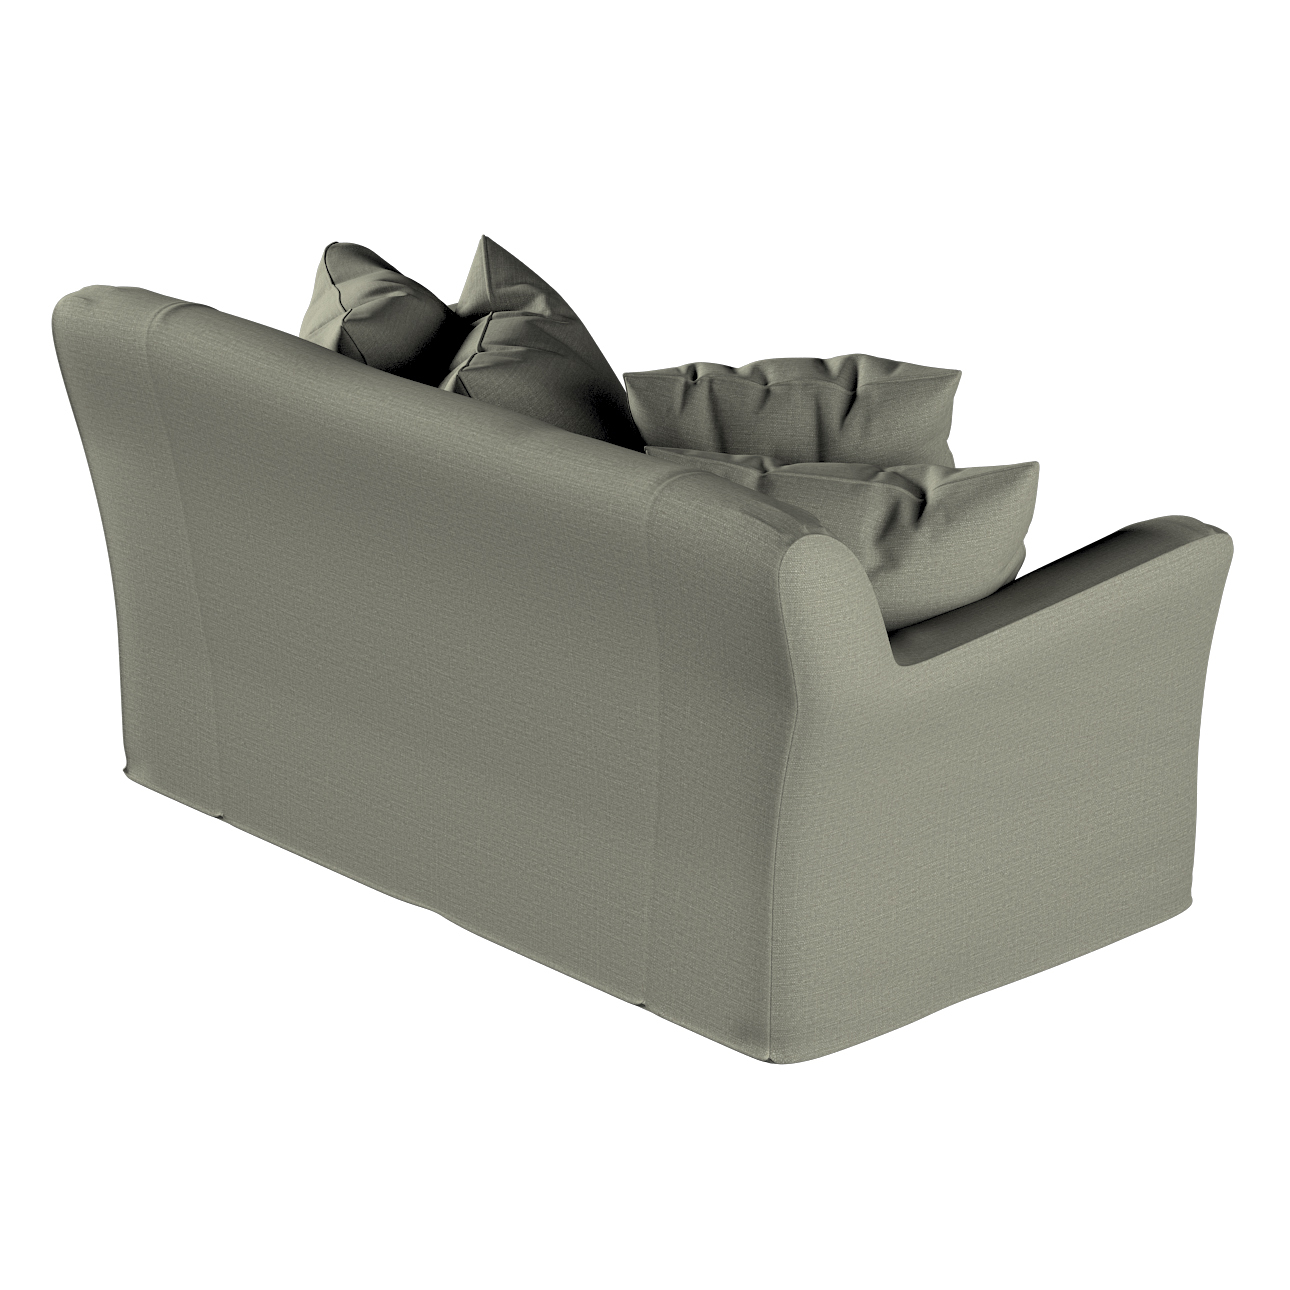 Bezug für Tomelilla 2-Sitzer Sofa nicht ausklappbar, grau-beige, Sofahusse, günstig online kaufen